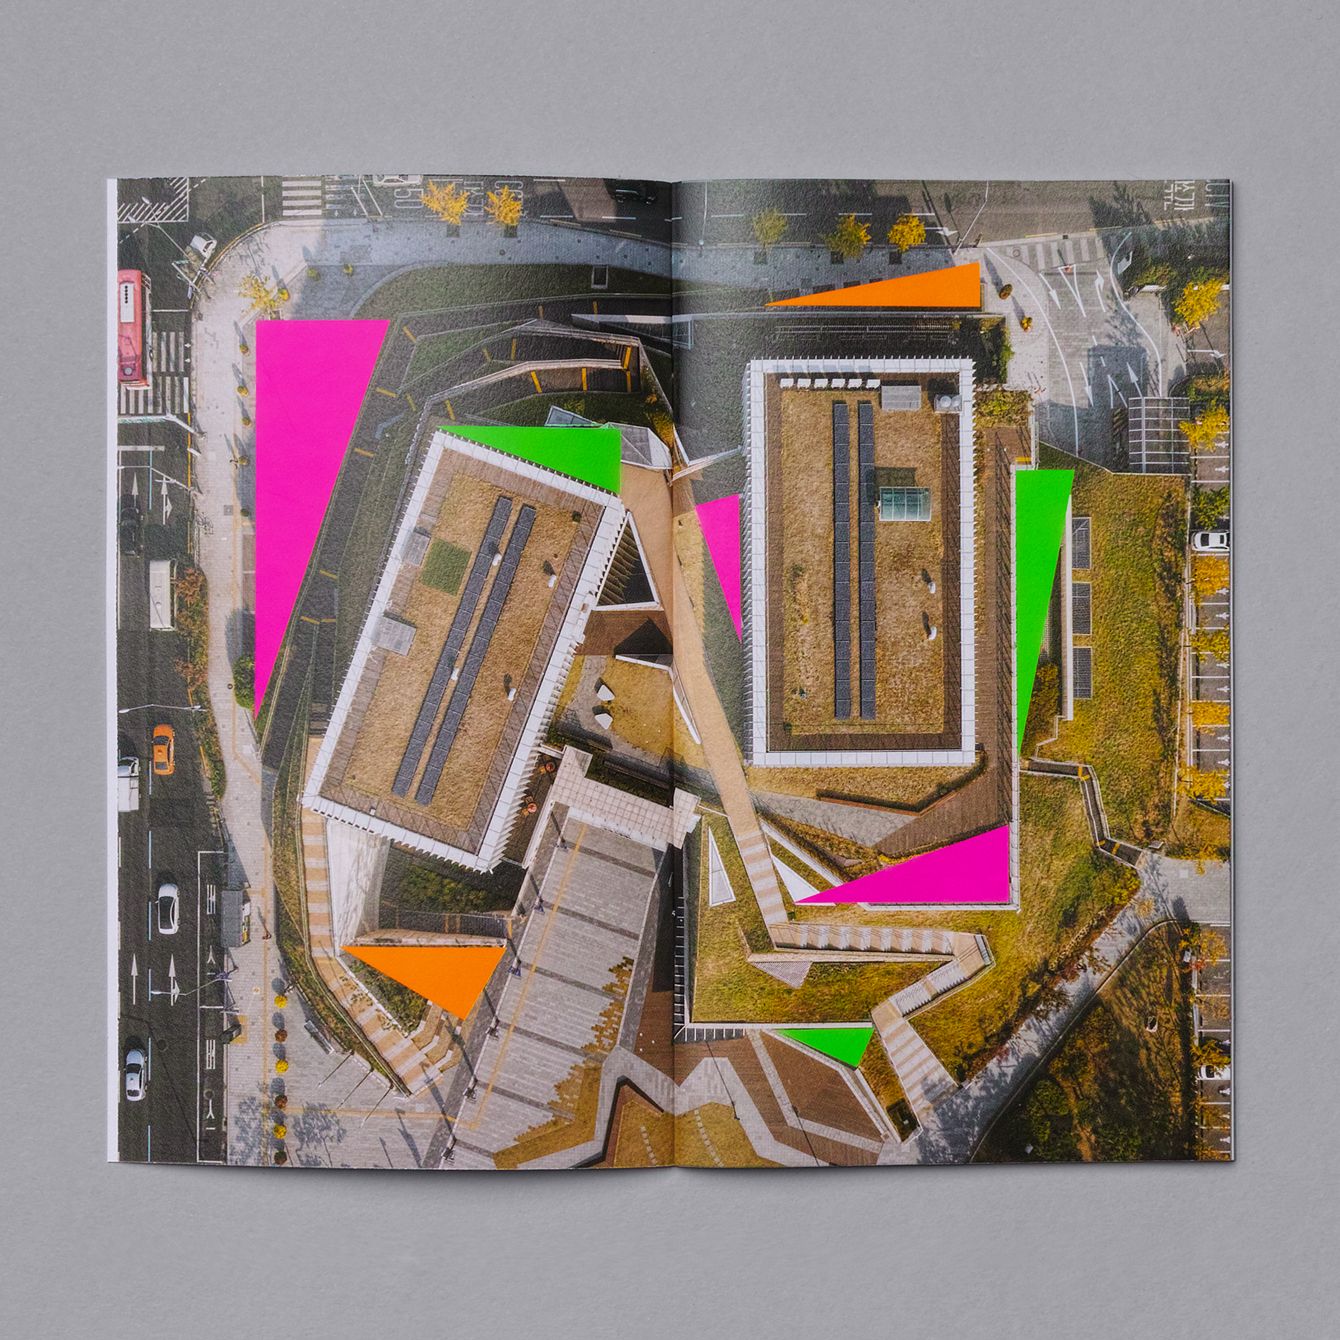 Brochure design for Buk Seoul Museum of Art's 2018 season designed by Studio fnt